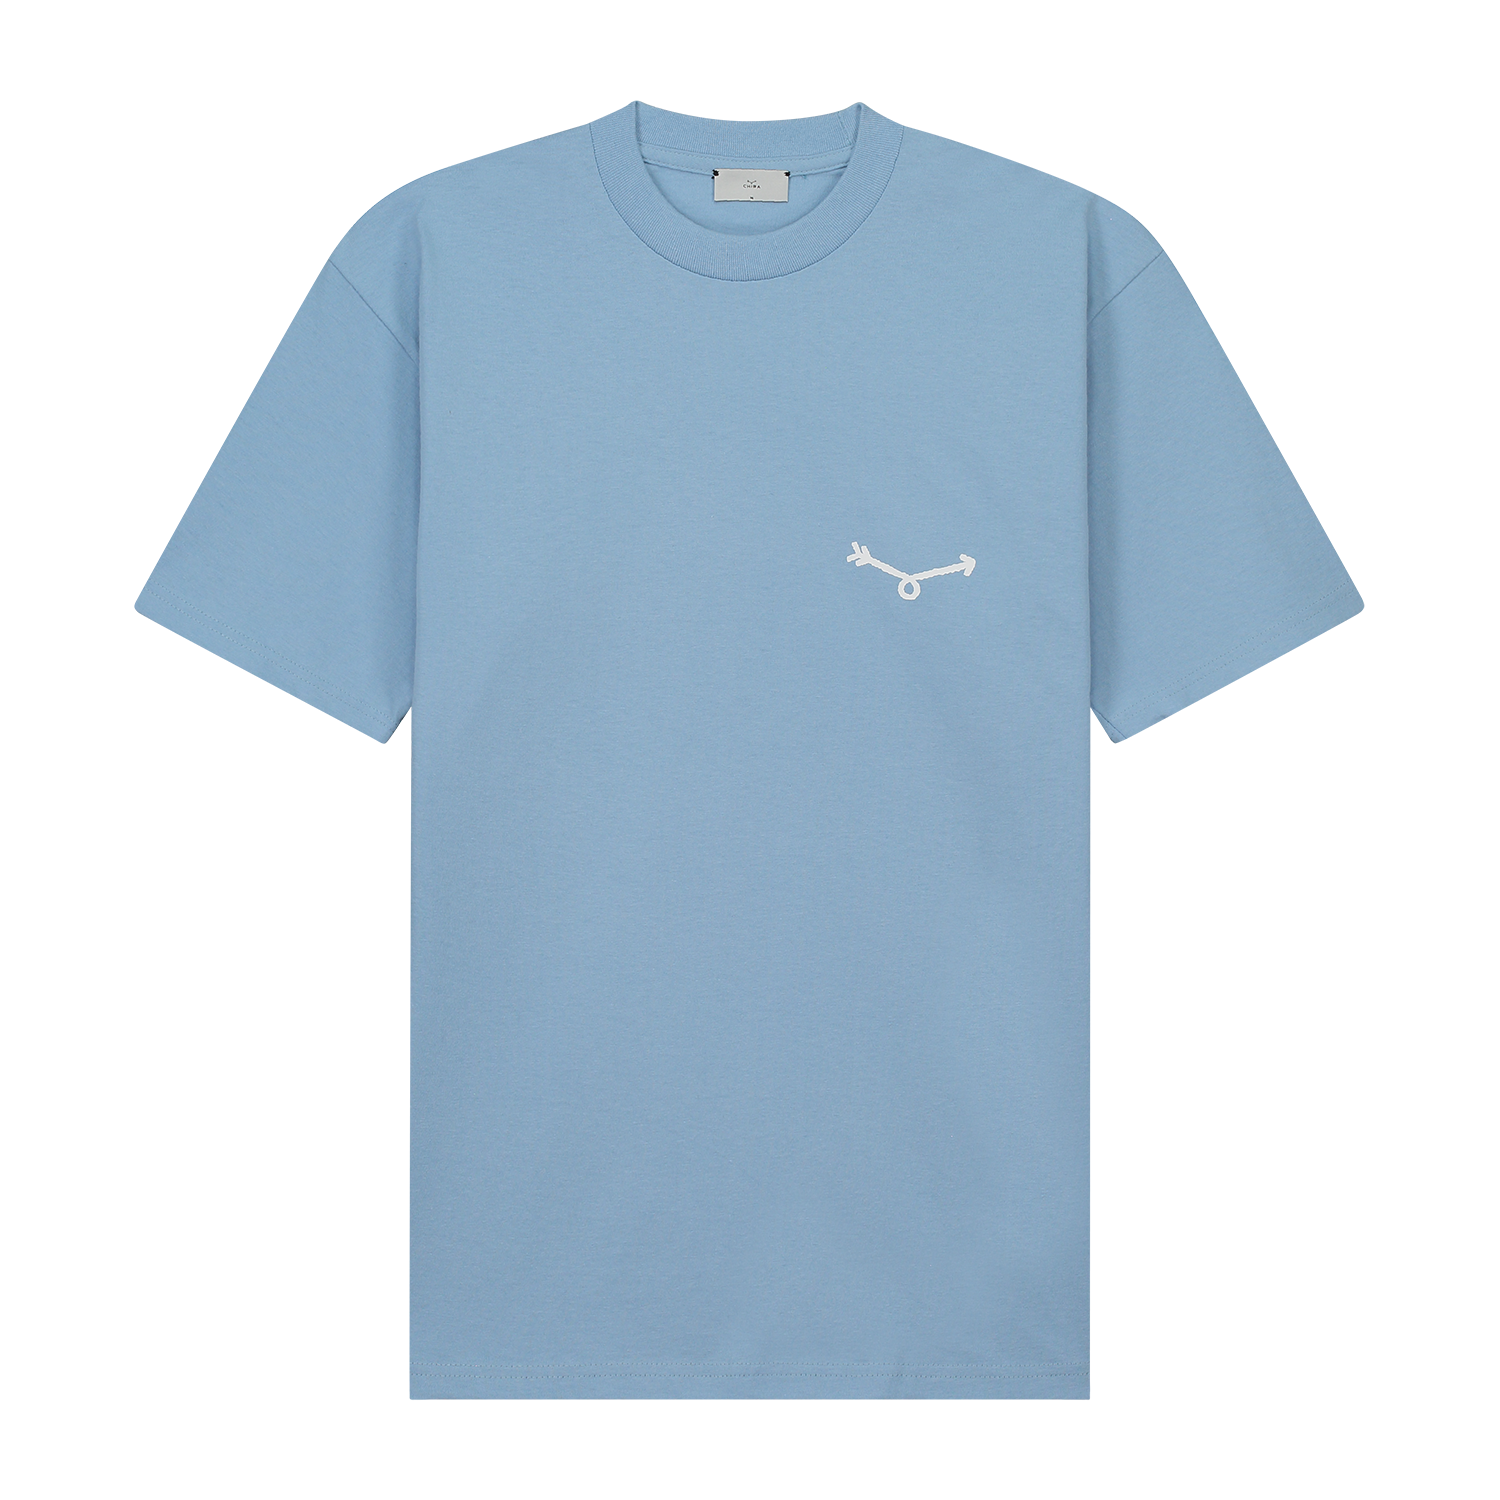 Team Chiba T-shirt Sky blue